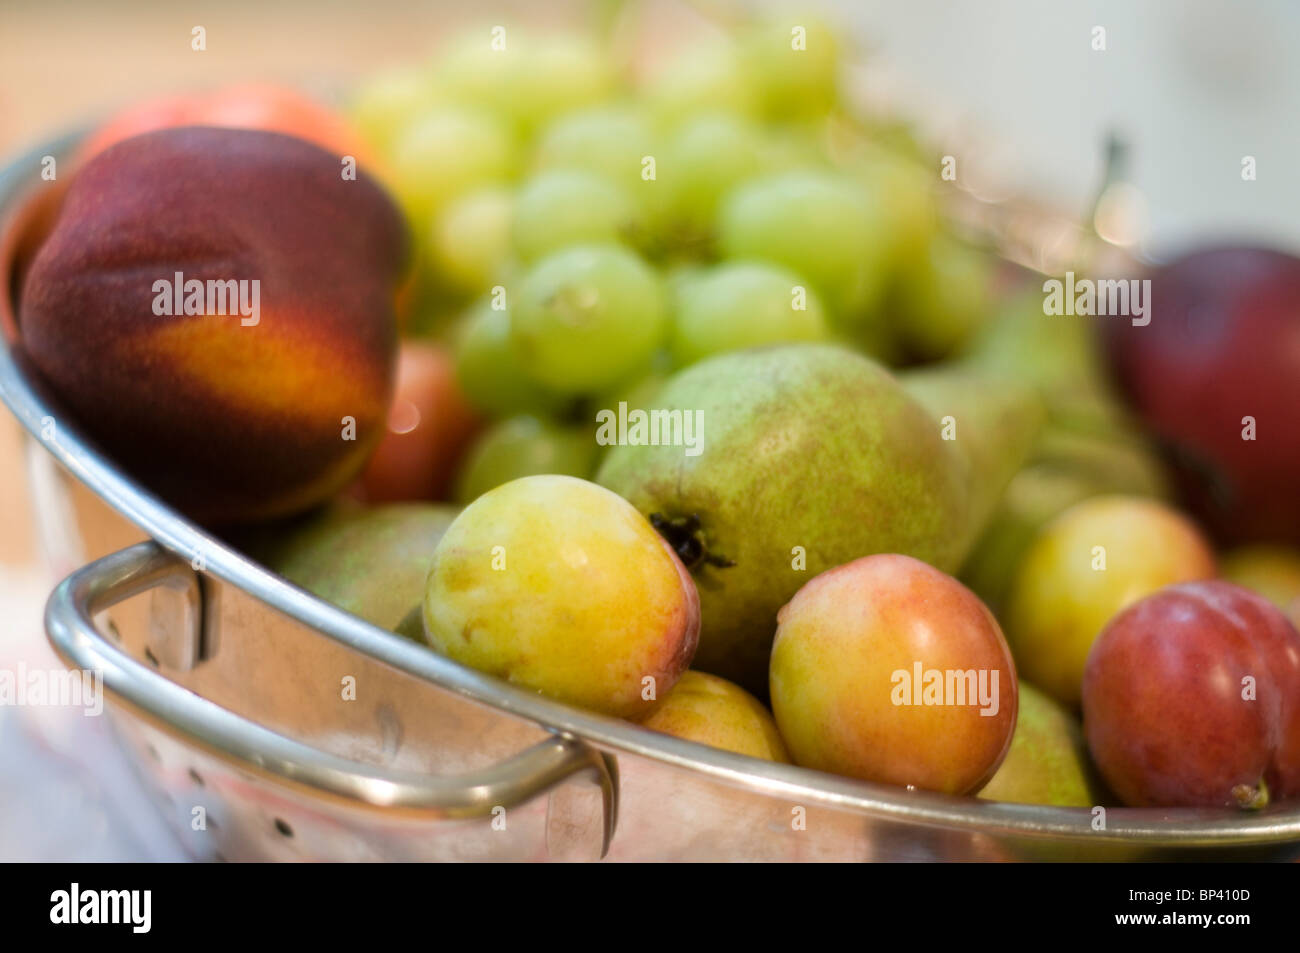 Une passoire de fruits, notamment les prunes, raisins, pommes et nectarines Banque D'Images